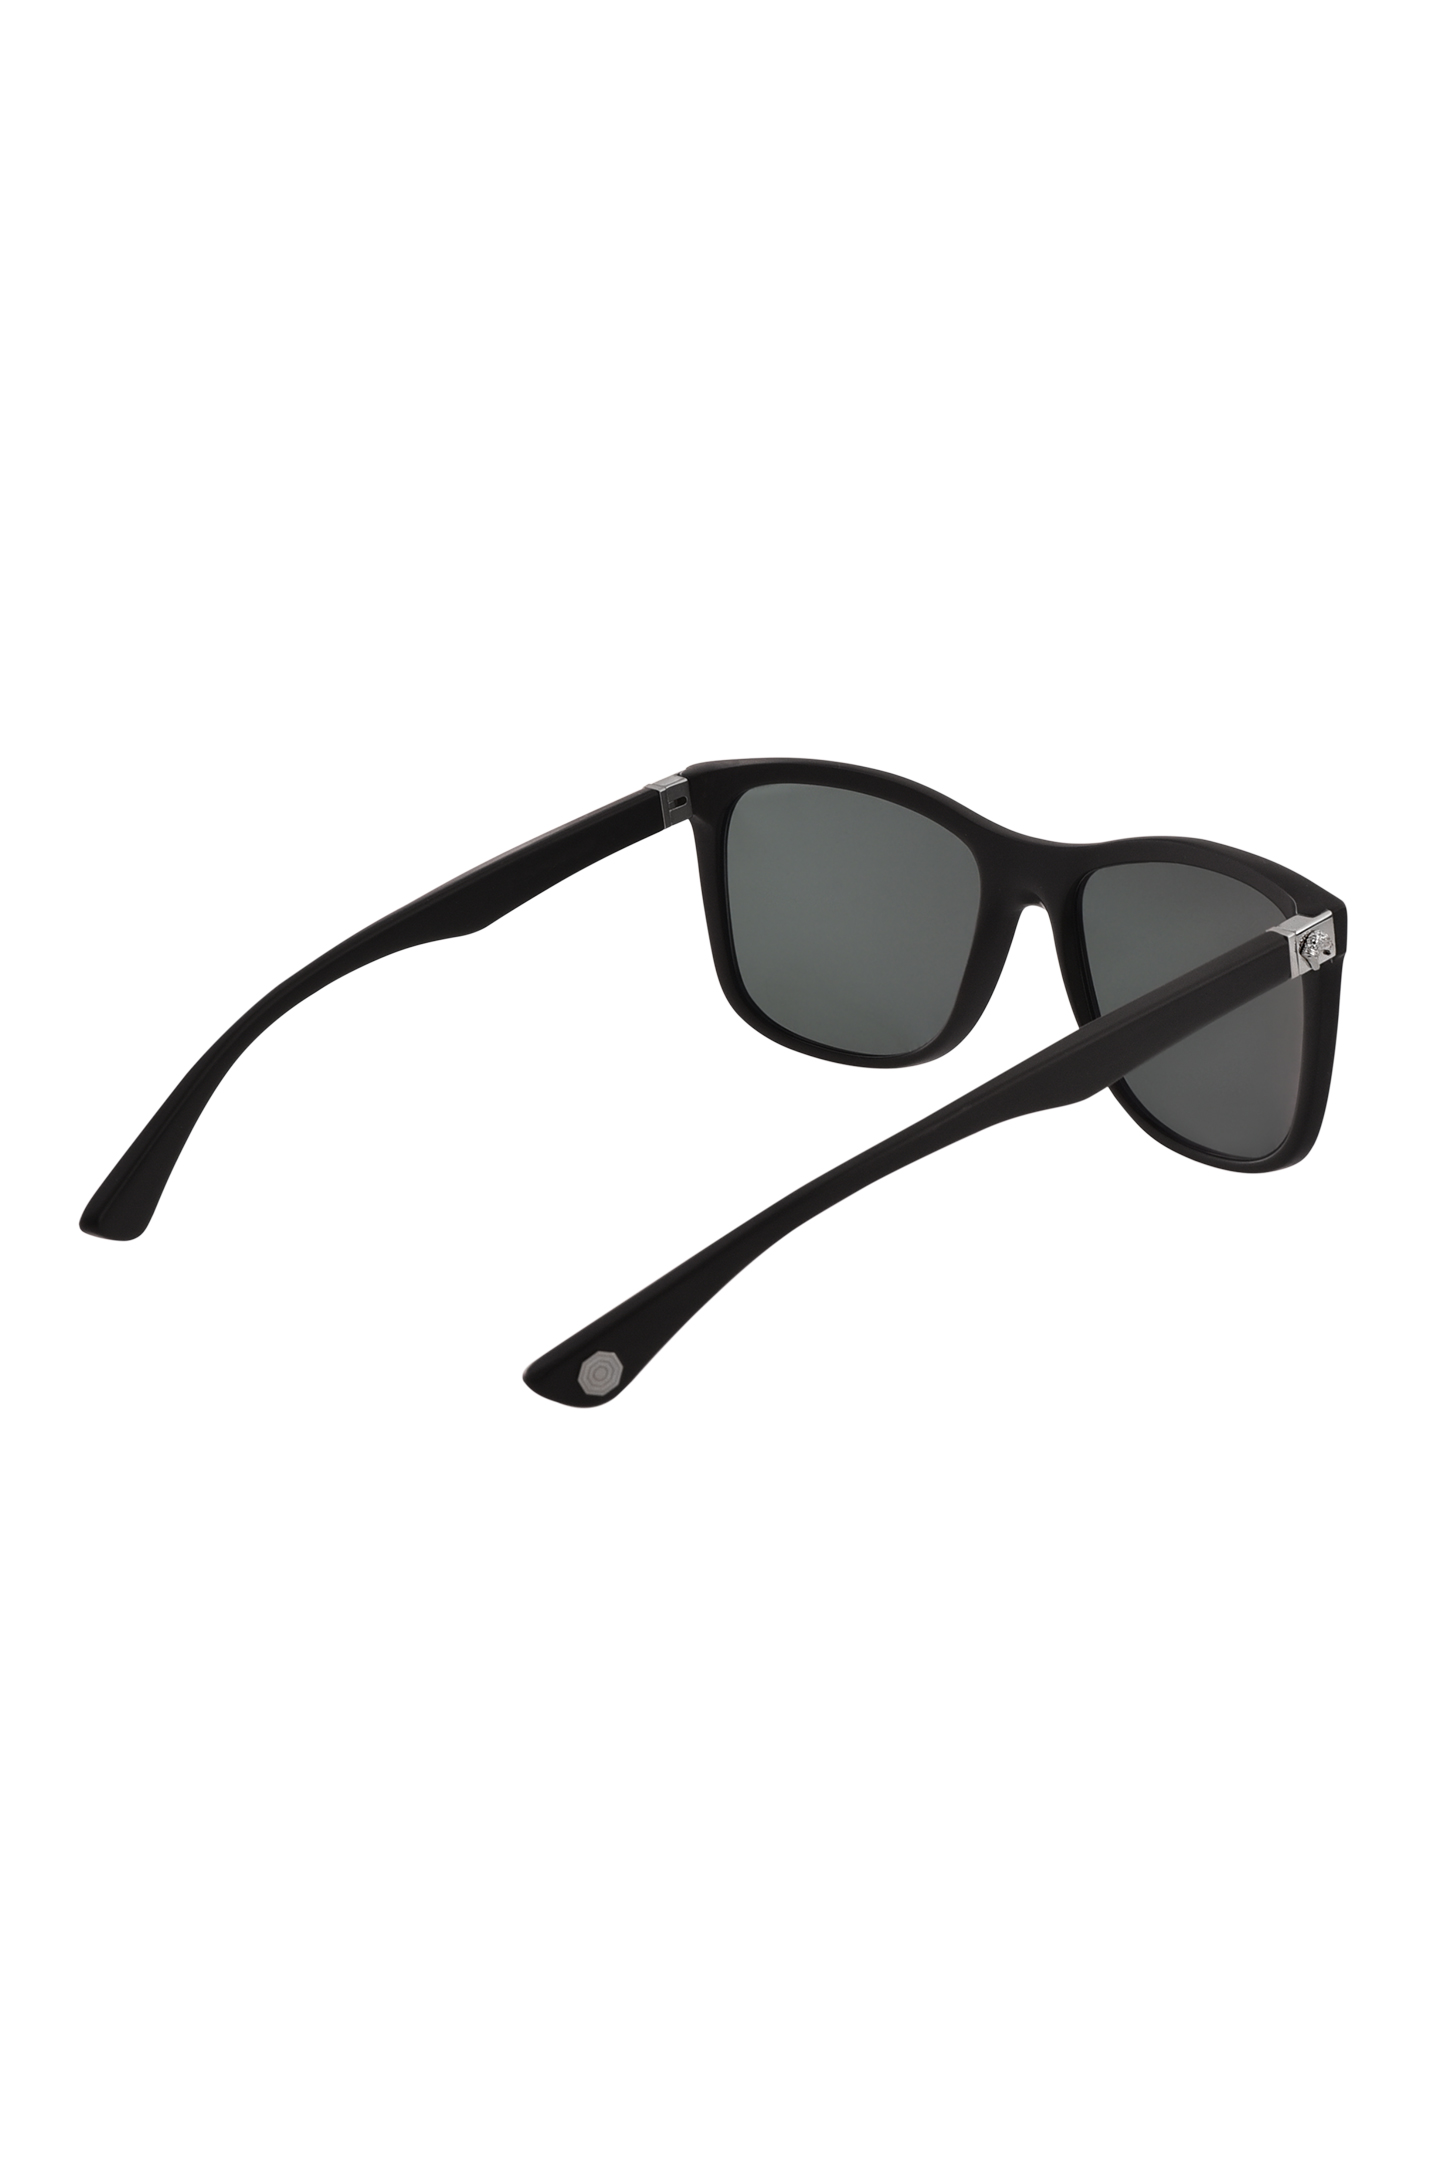 Солнцезащитные очки STEFANO RICCI SG04P HORN, цвет: Черный, Мужской